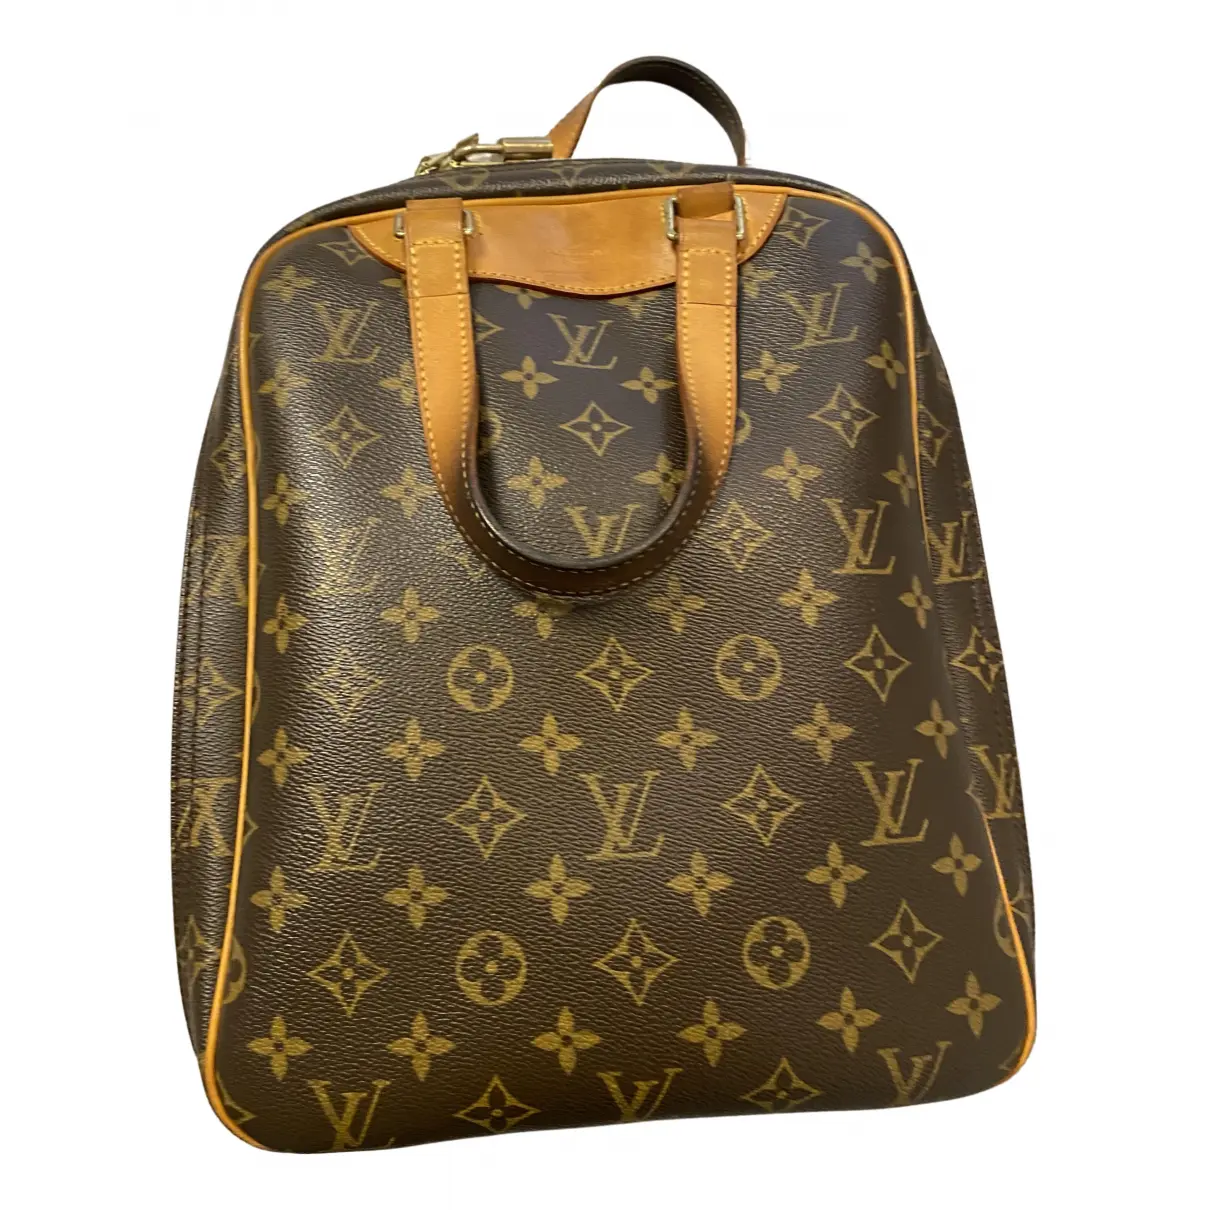 Excursion cloth travel bag Louis Vuitton